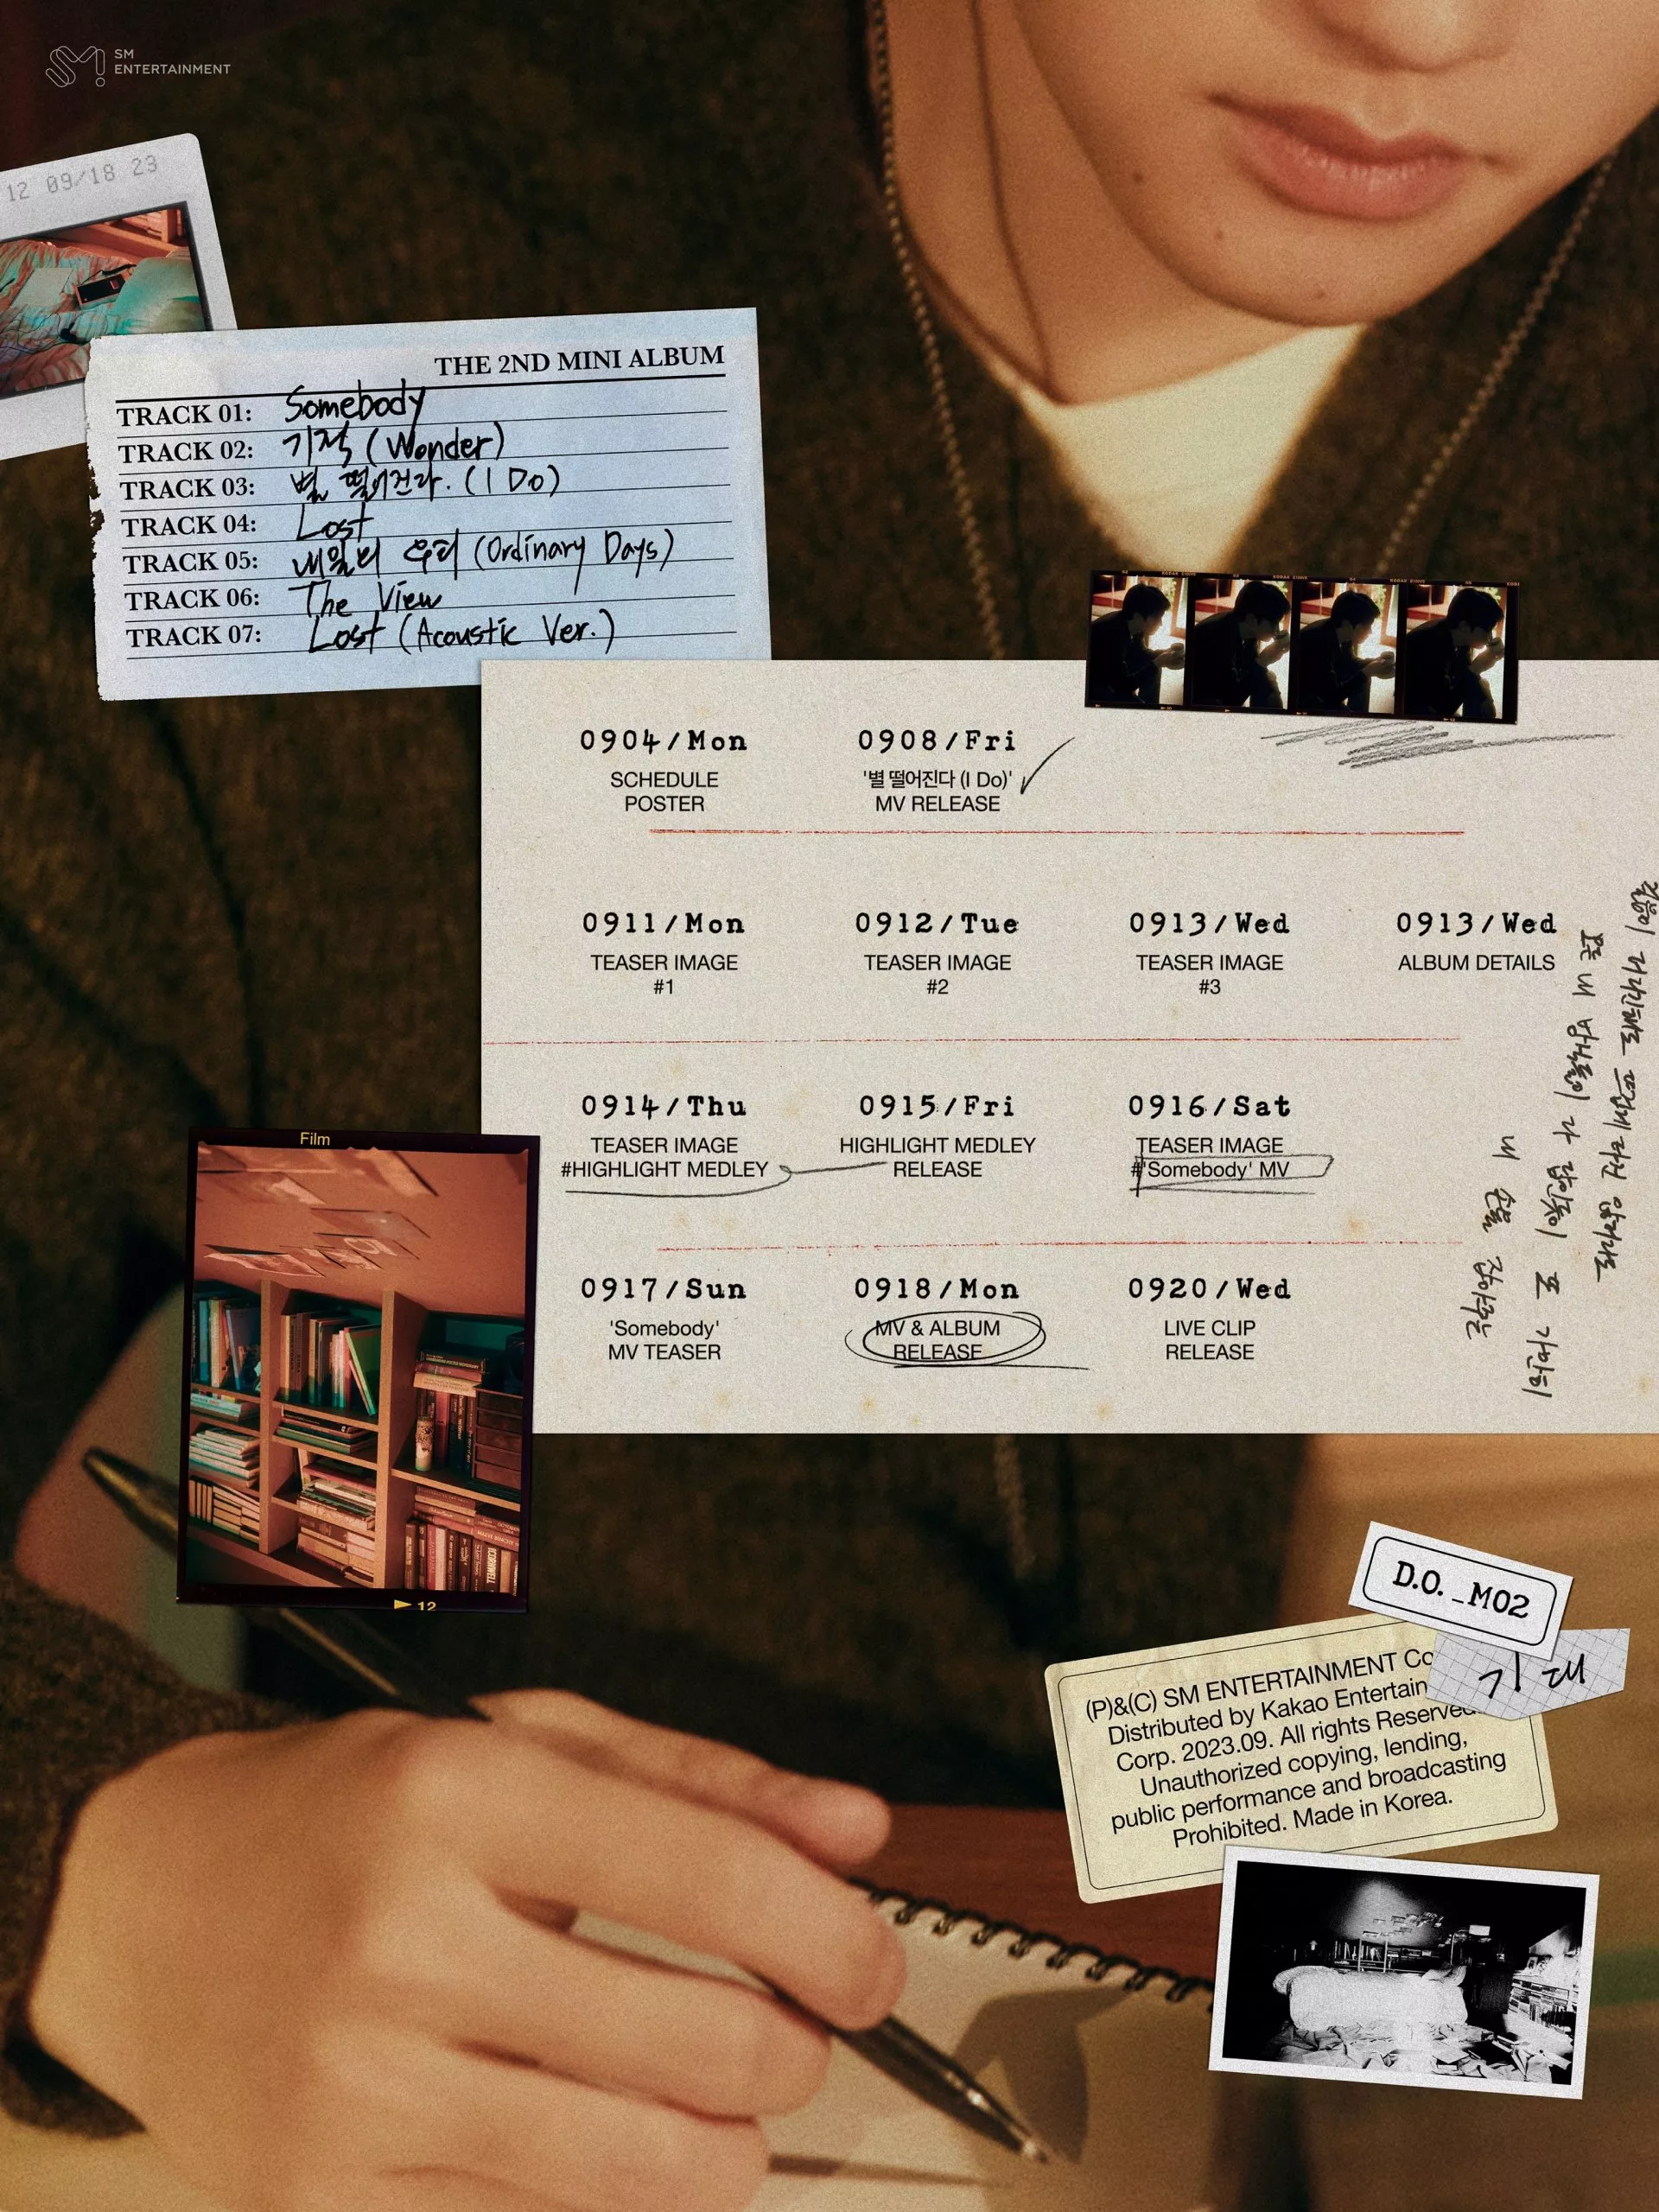 D.O. из EXO представил плакат с расписанием для второго мини-альбома